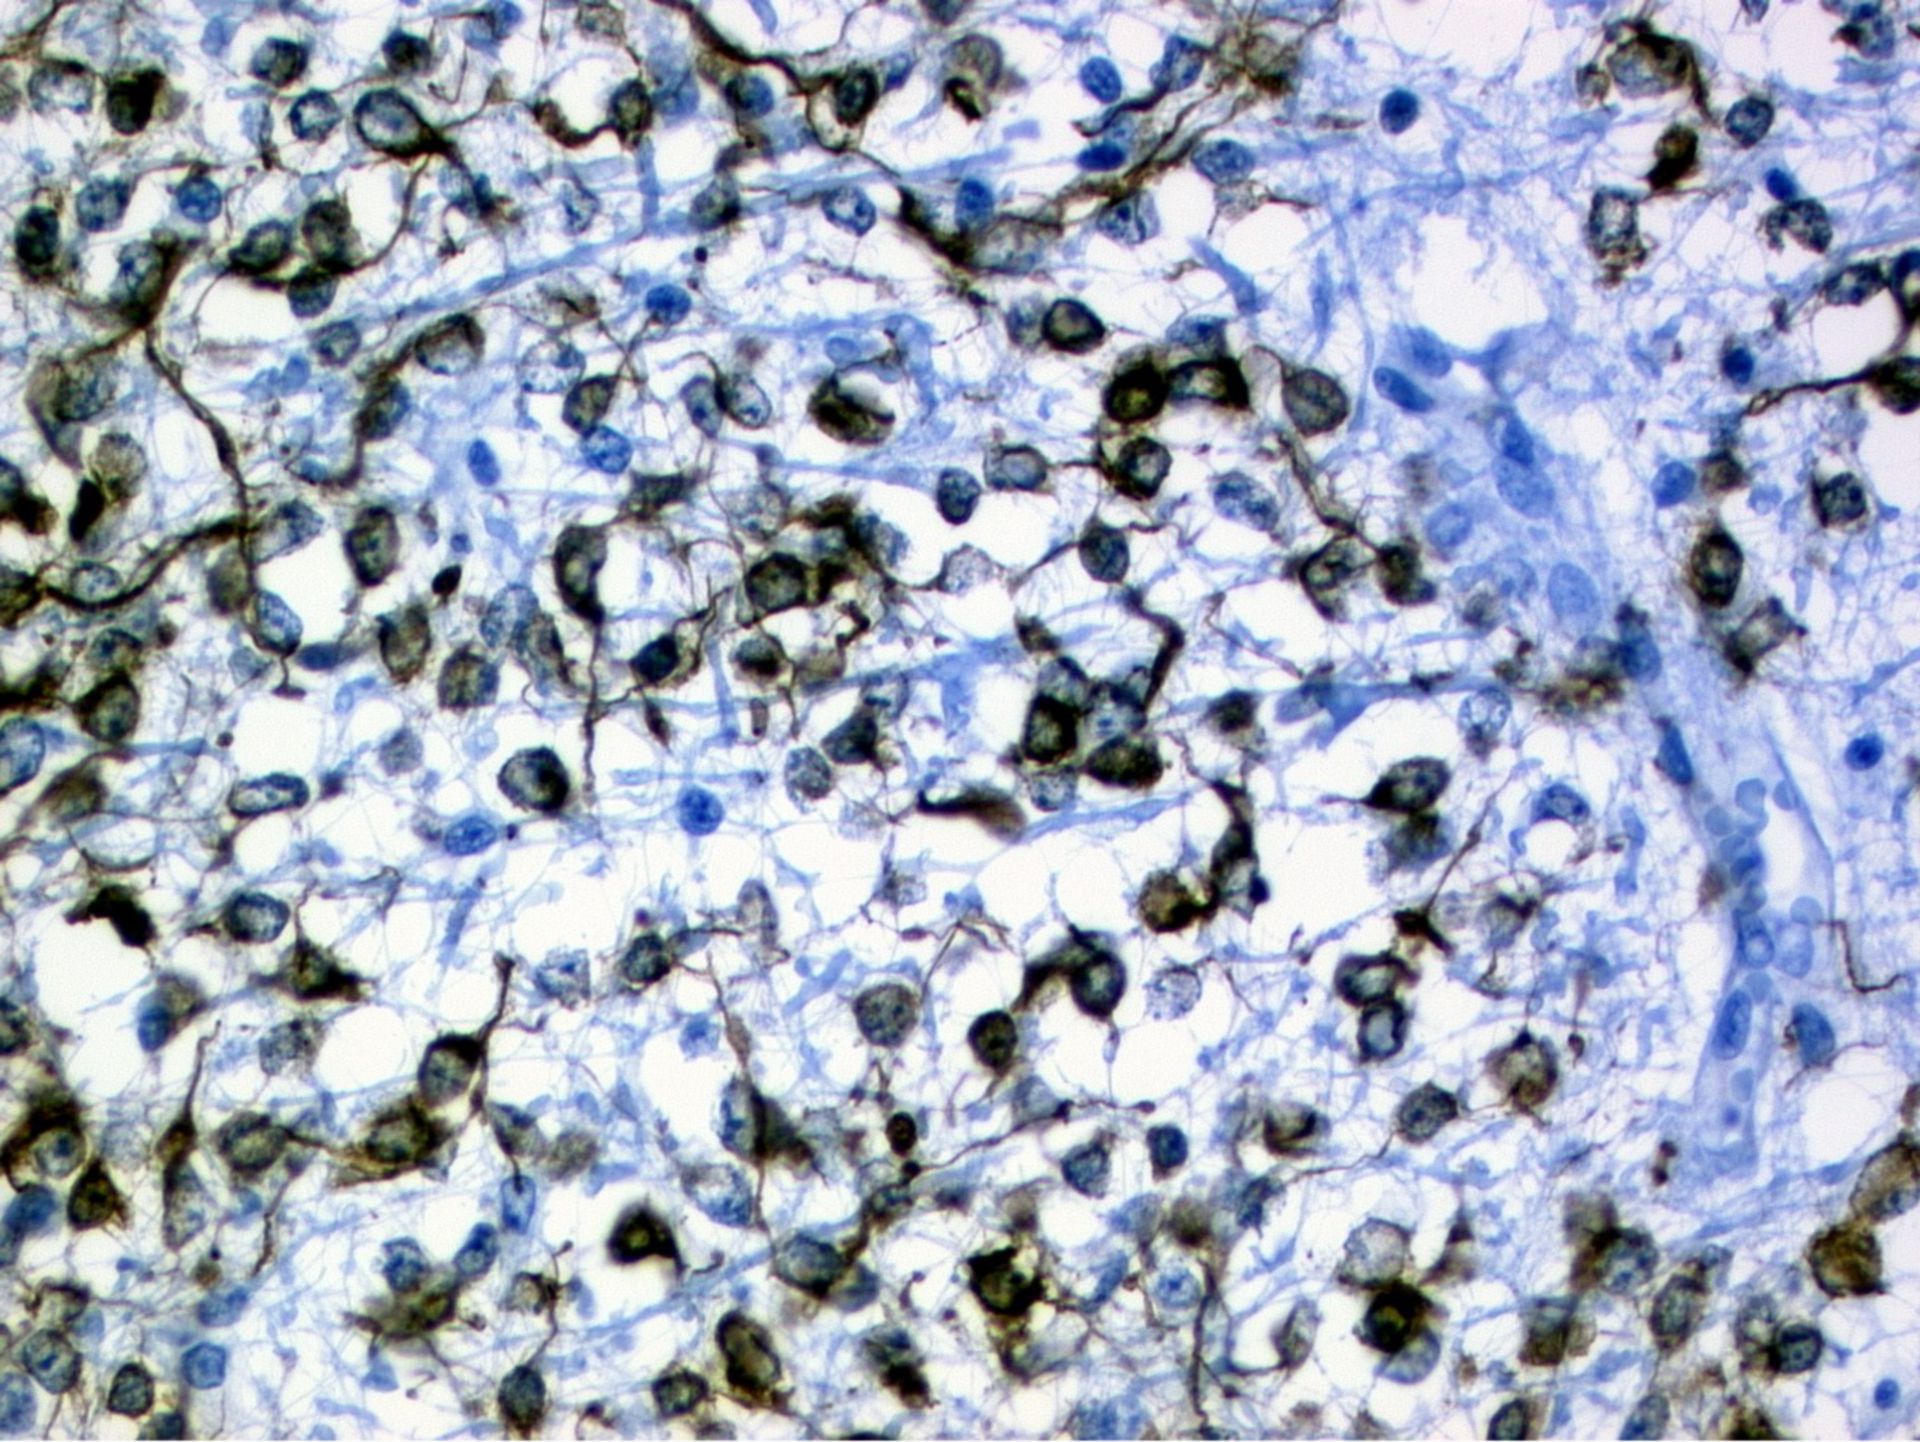 Oligodendroglia cells of a glioblastoma